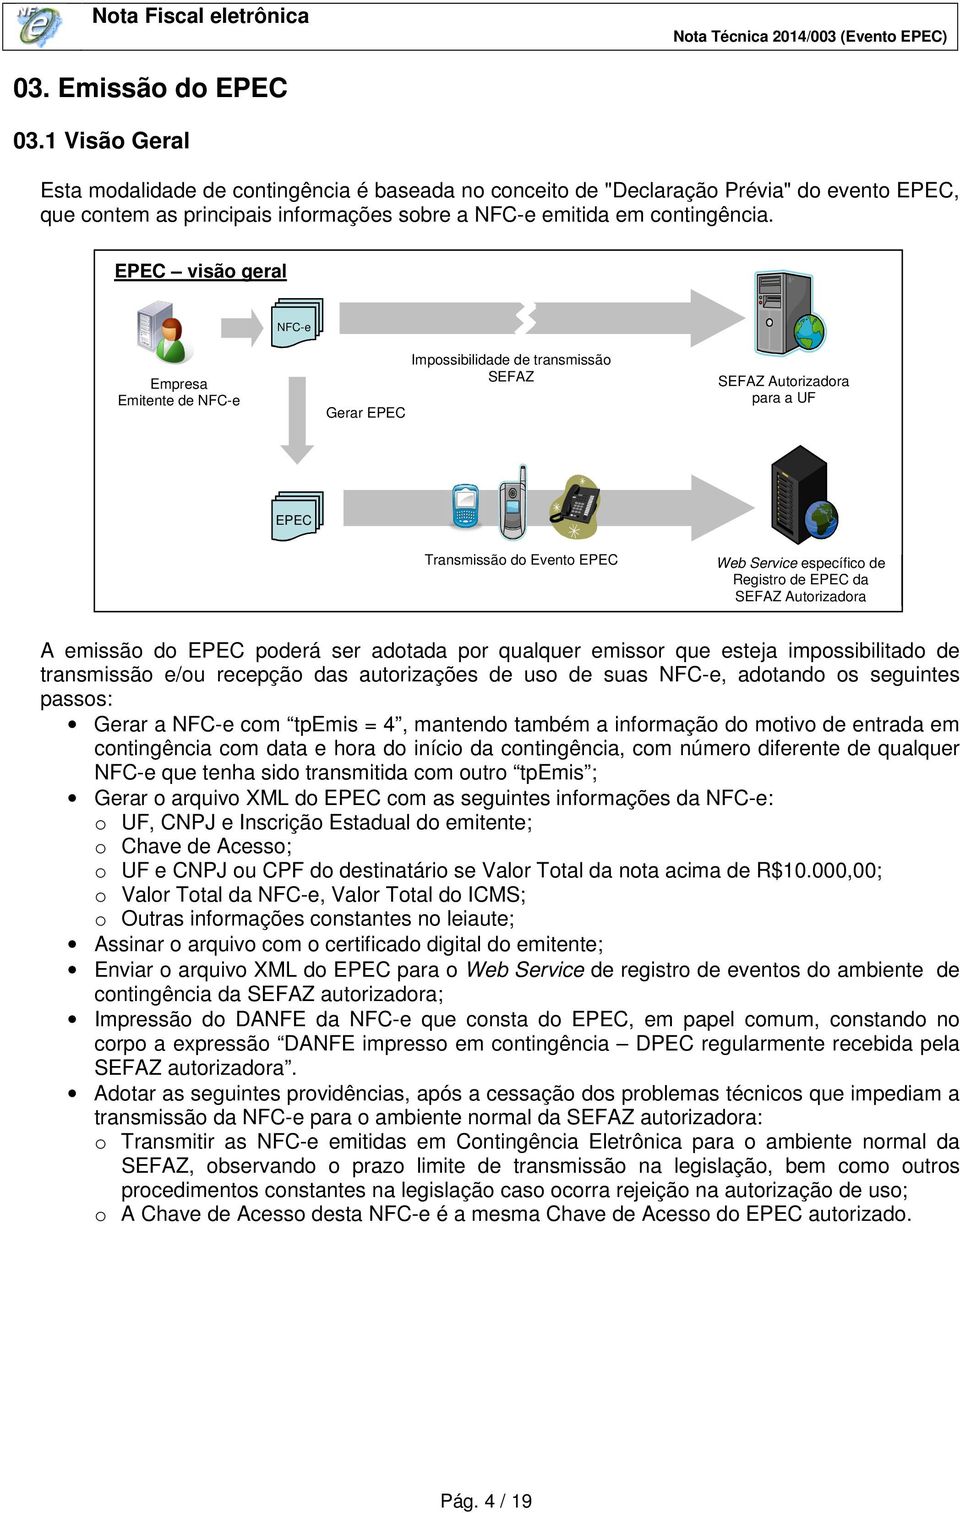 EPEC visão geral NFC-e Empresa Emitente de NFC-e Gerar EPEC Impossibilidade de transmissão SEFAZ SEFAZ Autorizadora para a UF EPEC Transmissão do Evento EPEC Web Service específico de Registro de